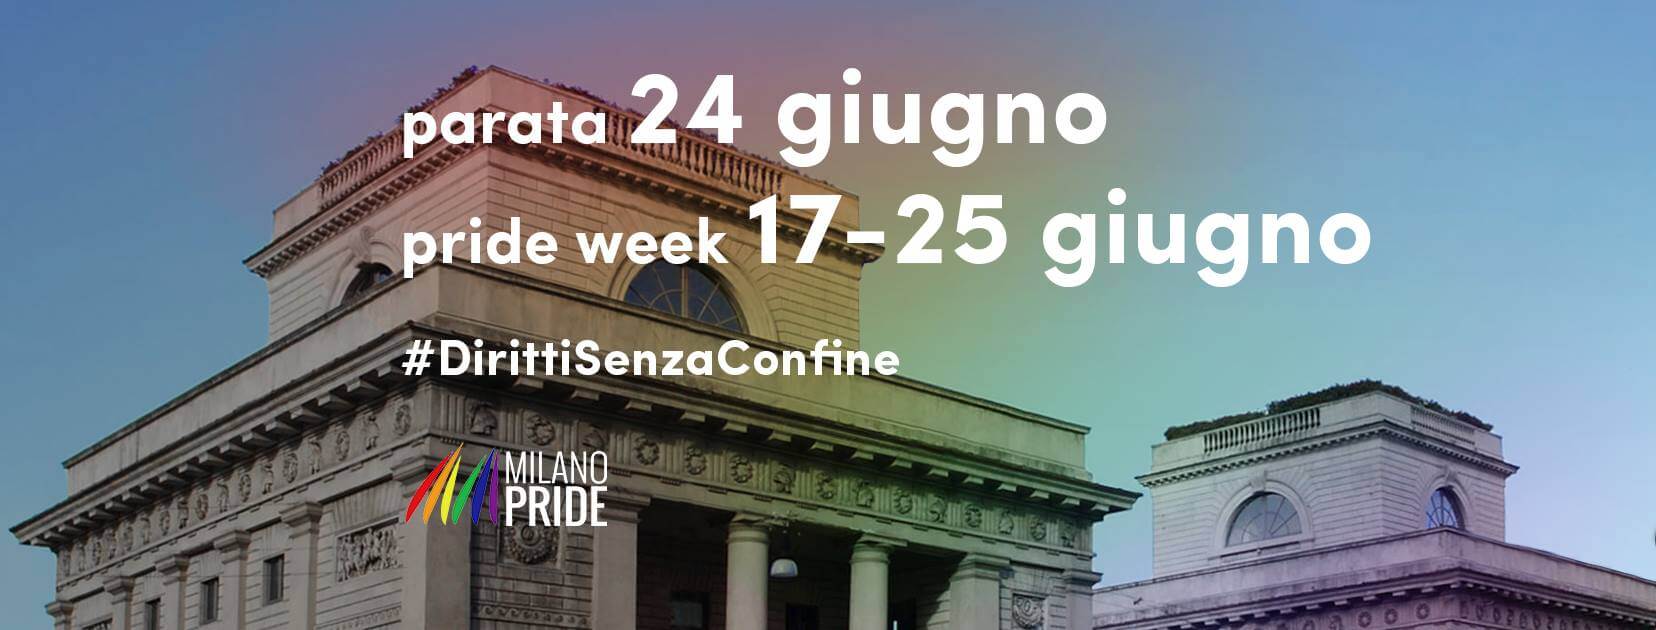 Onda Pride 2017, presentati i documenti politici delle manifestazioni di Roma e Milano - 18595310 1410529188985103 5958371217209665583 o - Gay.it